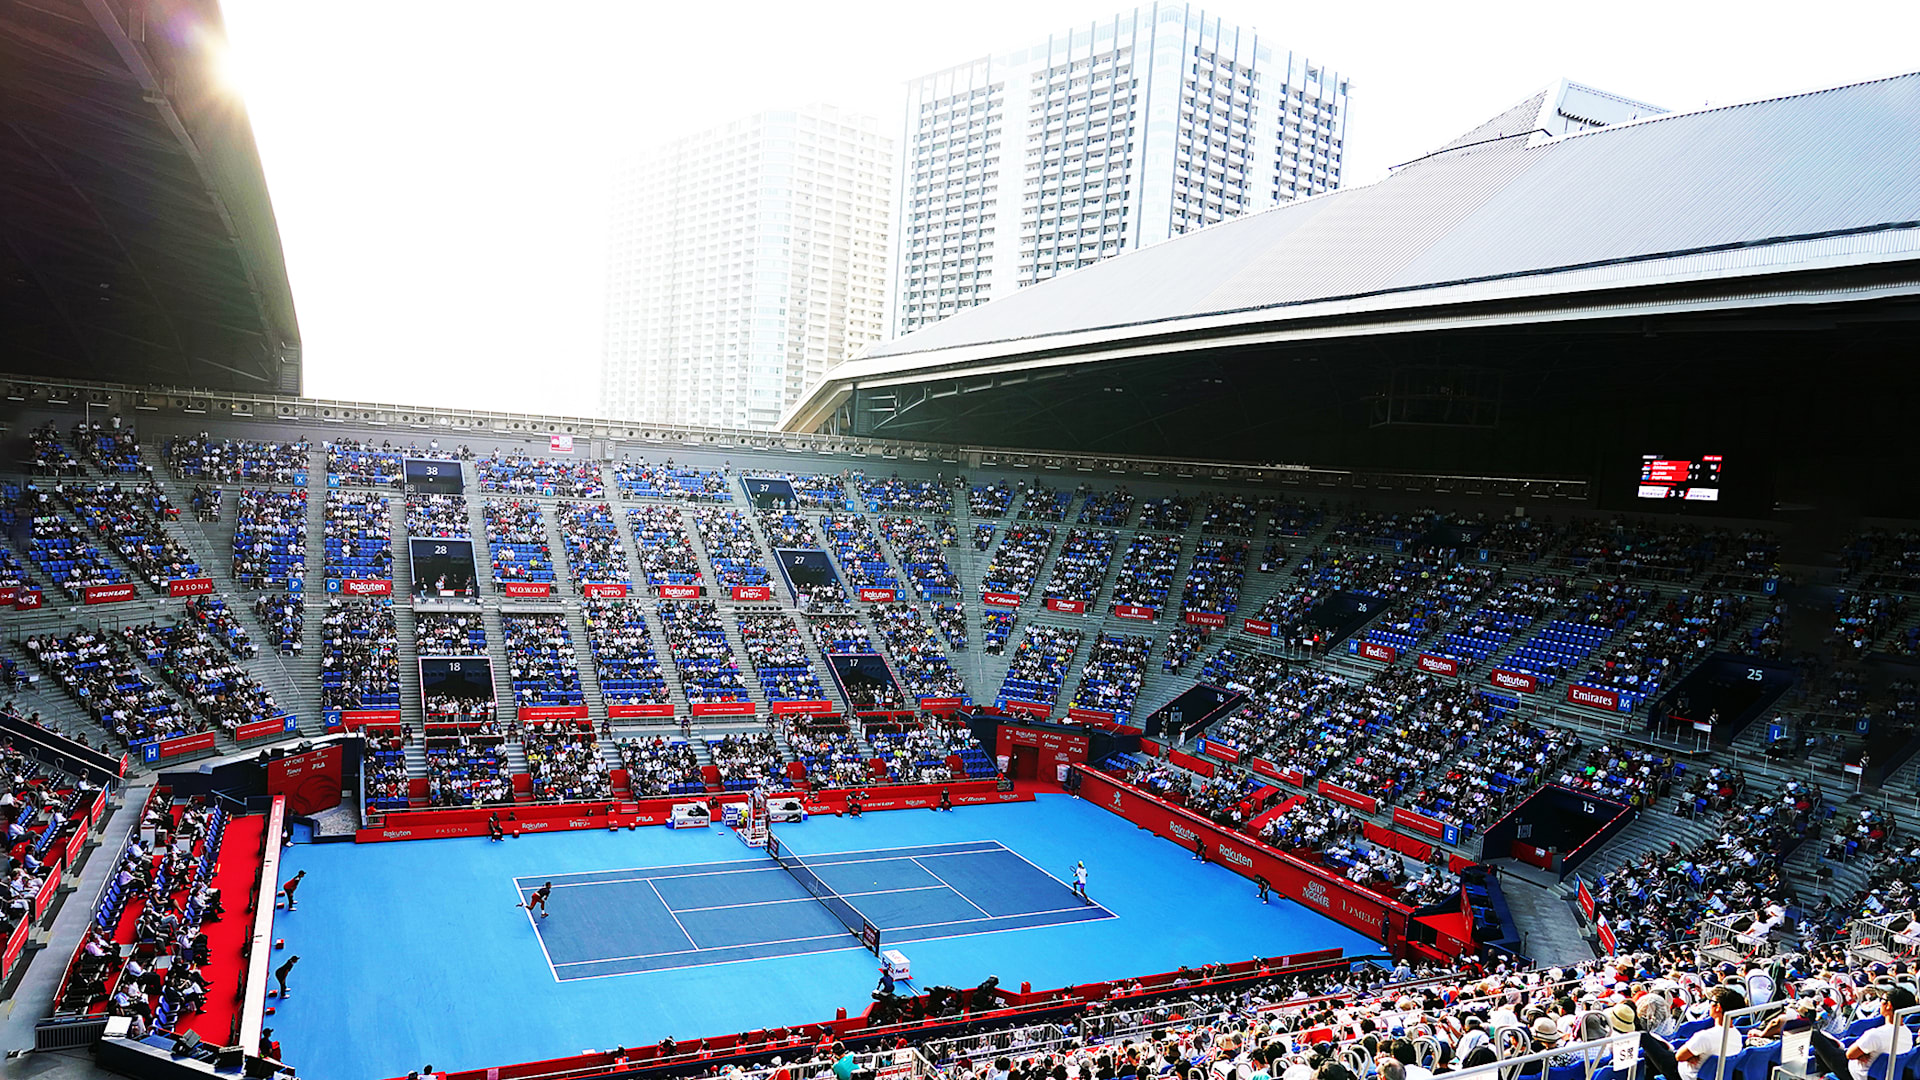 Revamped tennis venue “looking fantastic” for Tokyo 2020